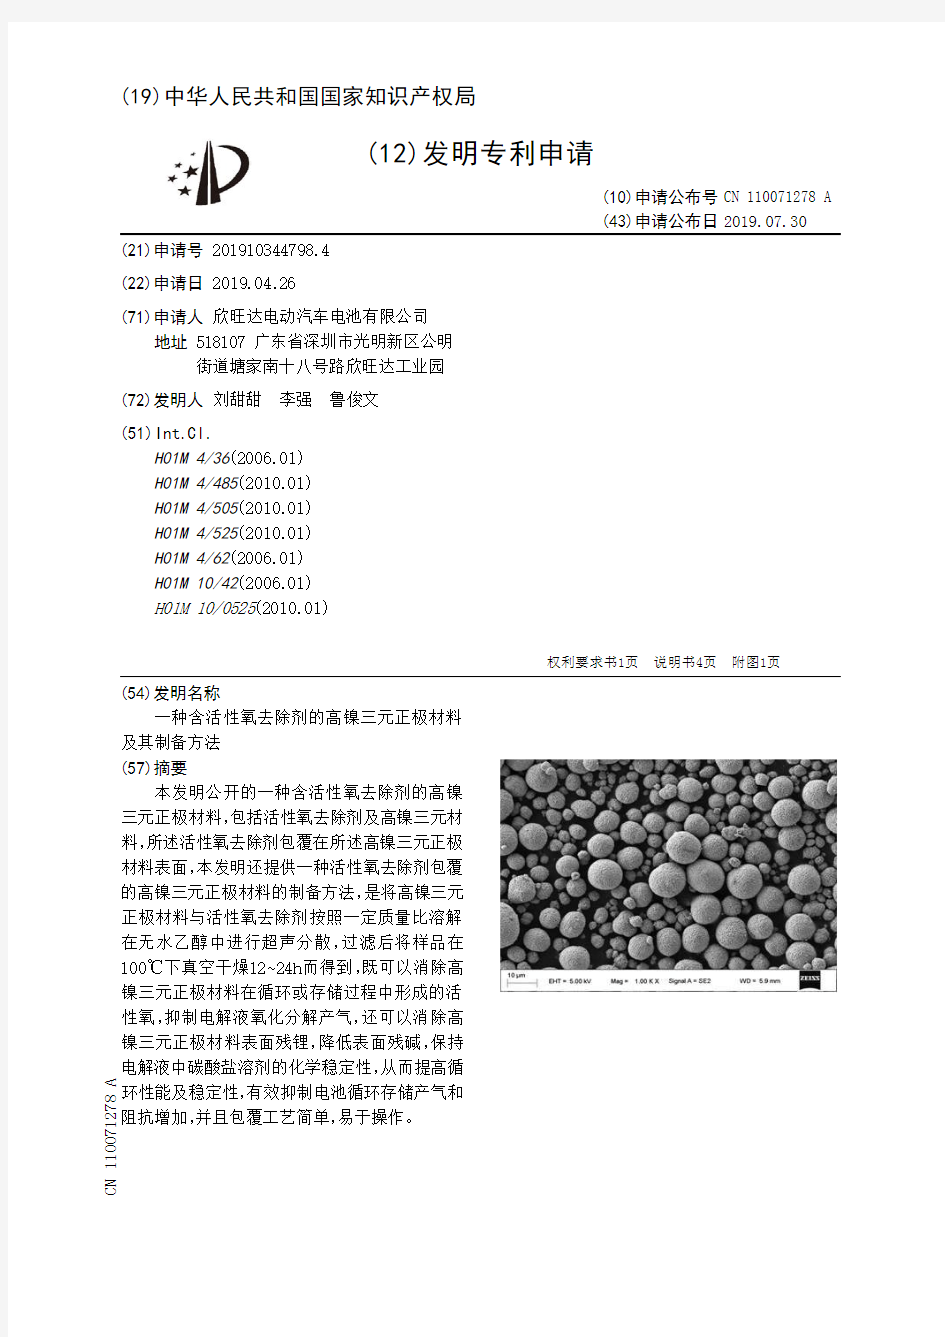 【CN110071278A】一种含活性氧去除剂的高镍三元正极材料及其制备方法【专利】